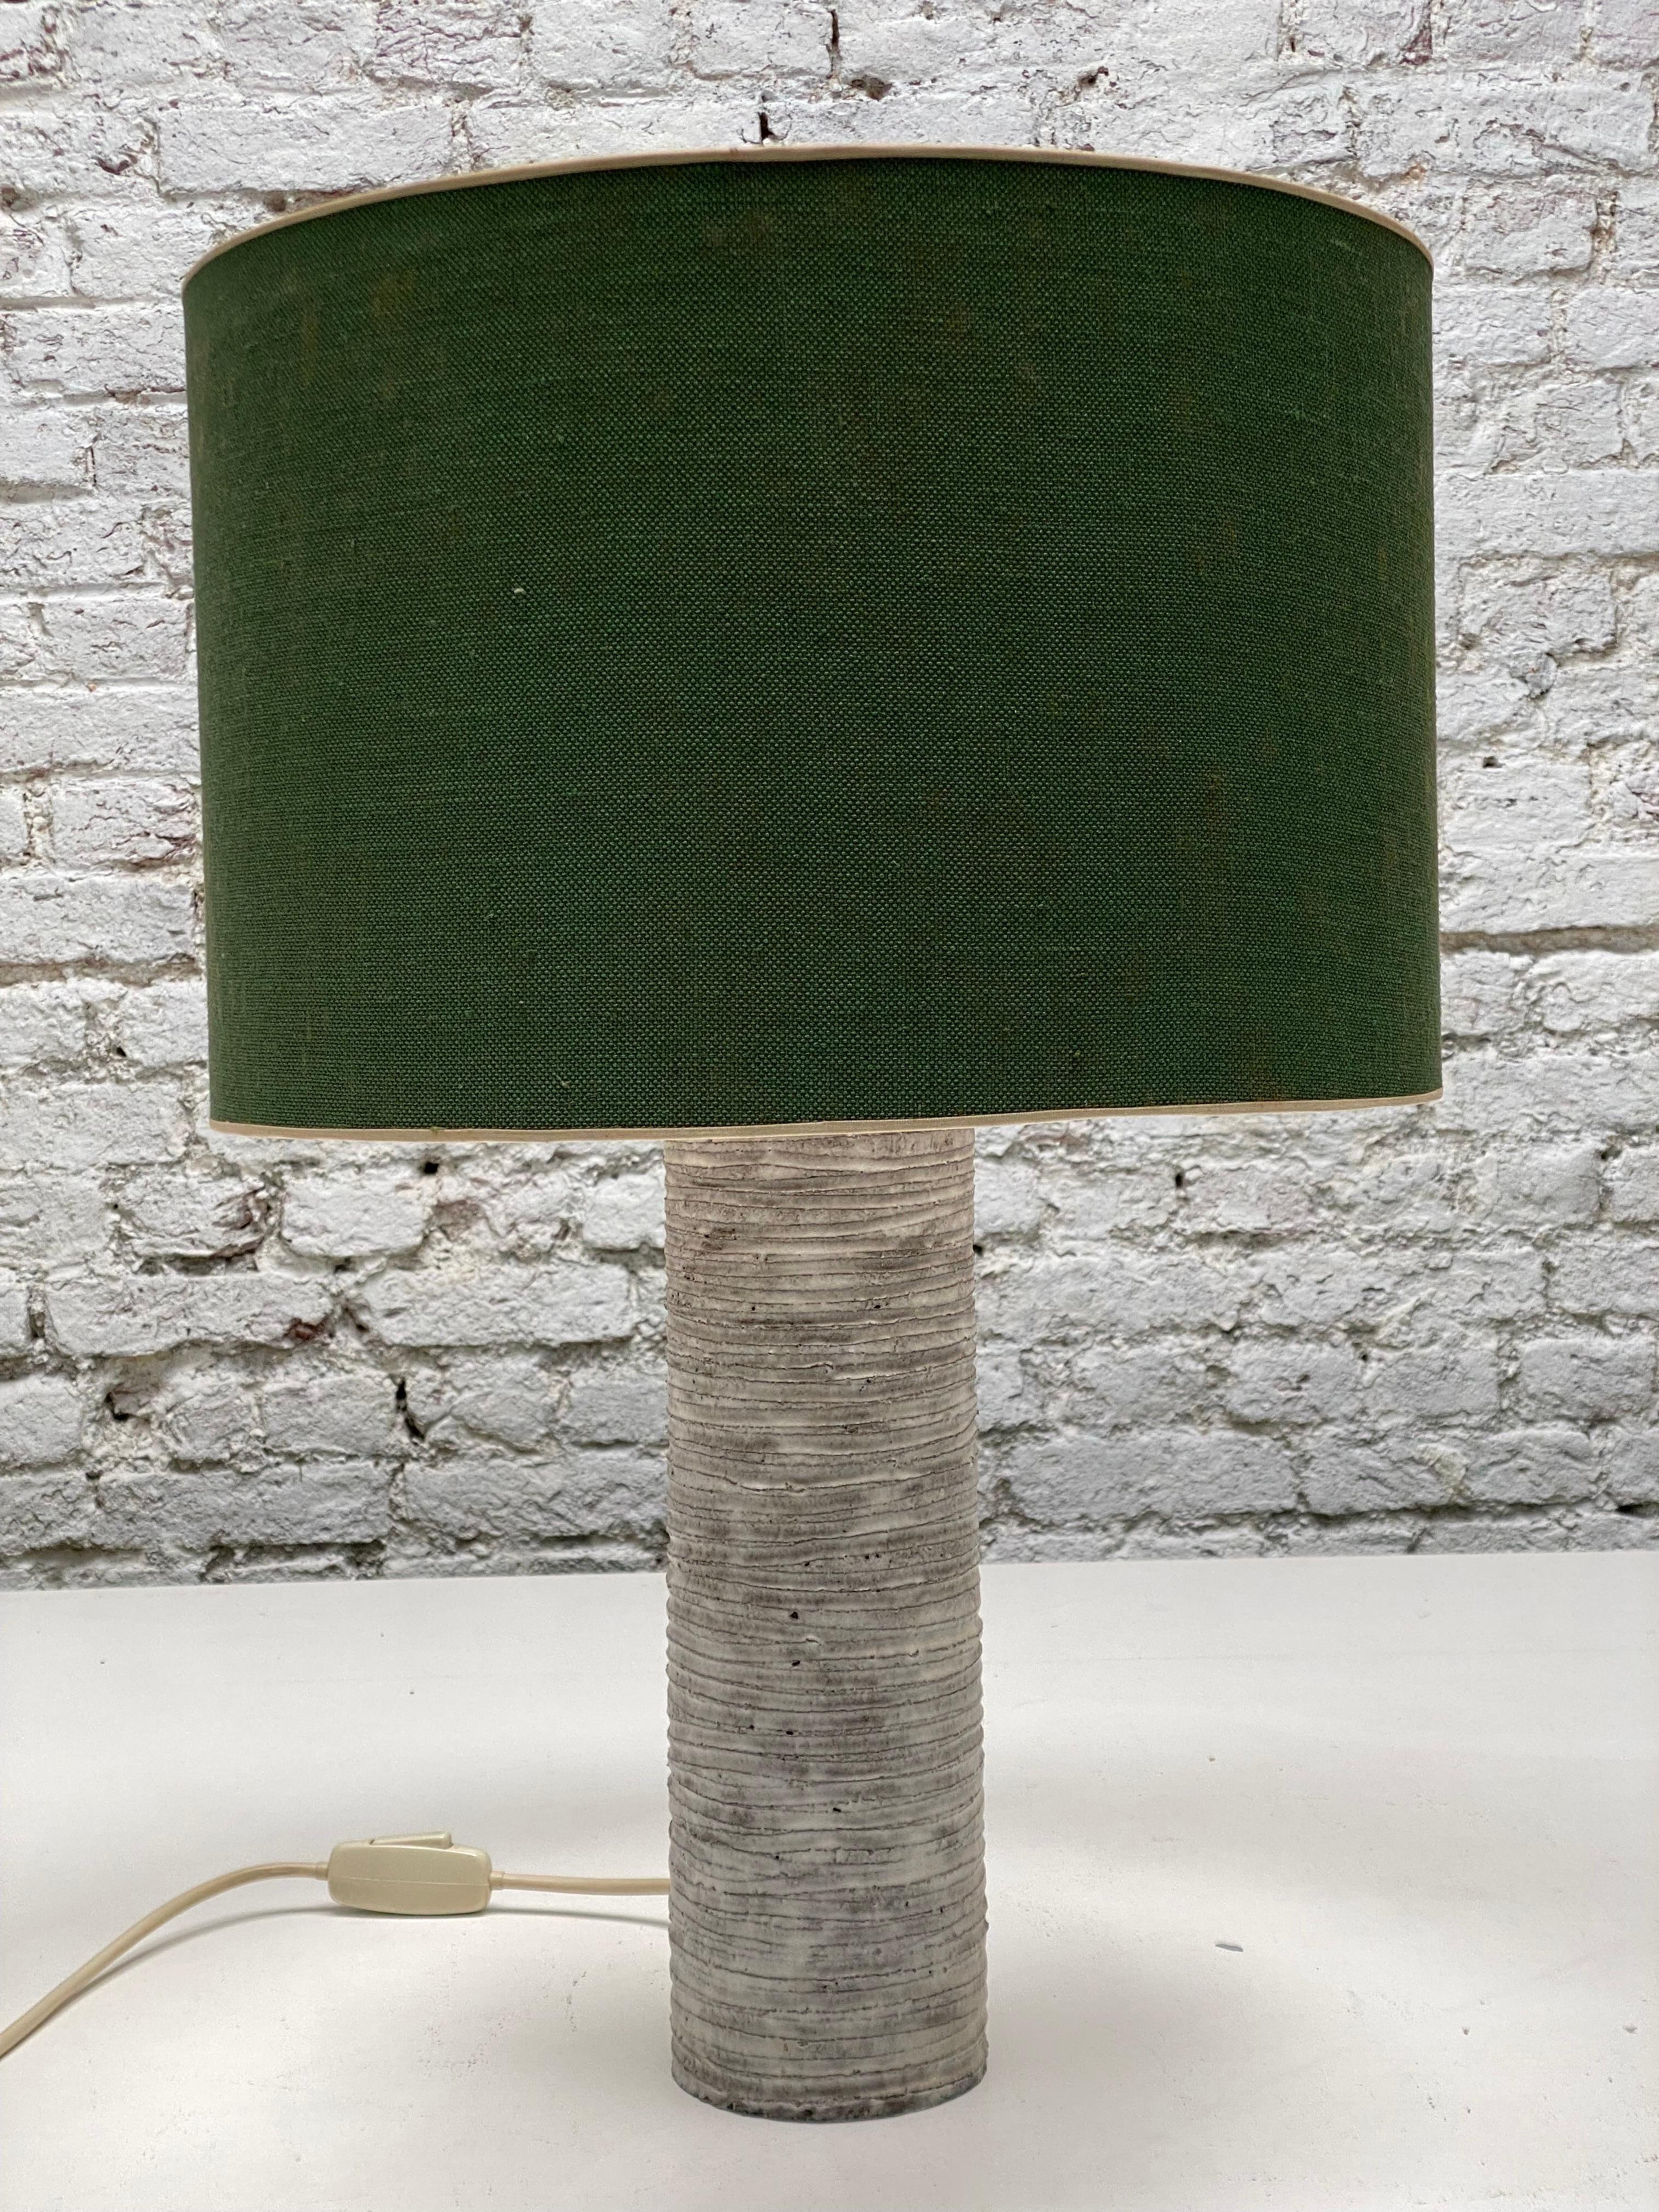 Lampe de table en céramique brutaliste dans les tons gris spiralés fabriquée au Danemark. Abat-jour vert d'origine. Dimensions abat-jour 40-27 cm, vase 53-10 cm. Hauteur 59 cm.